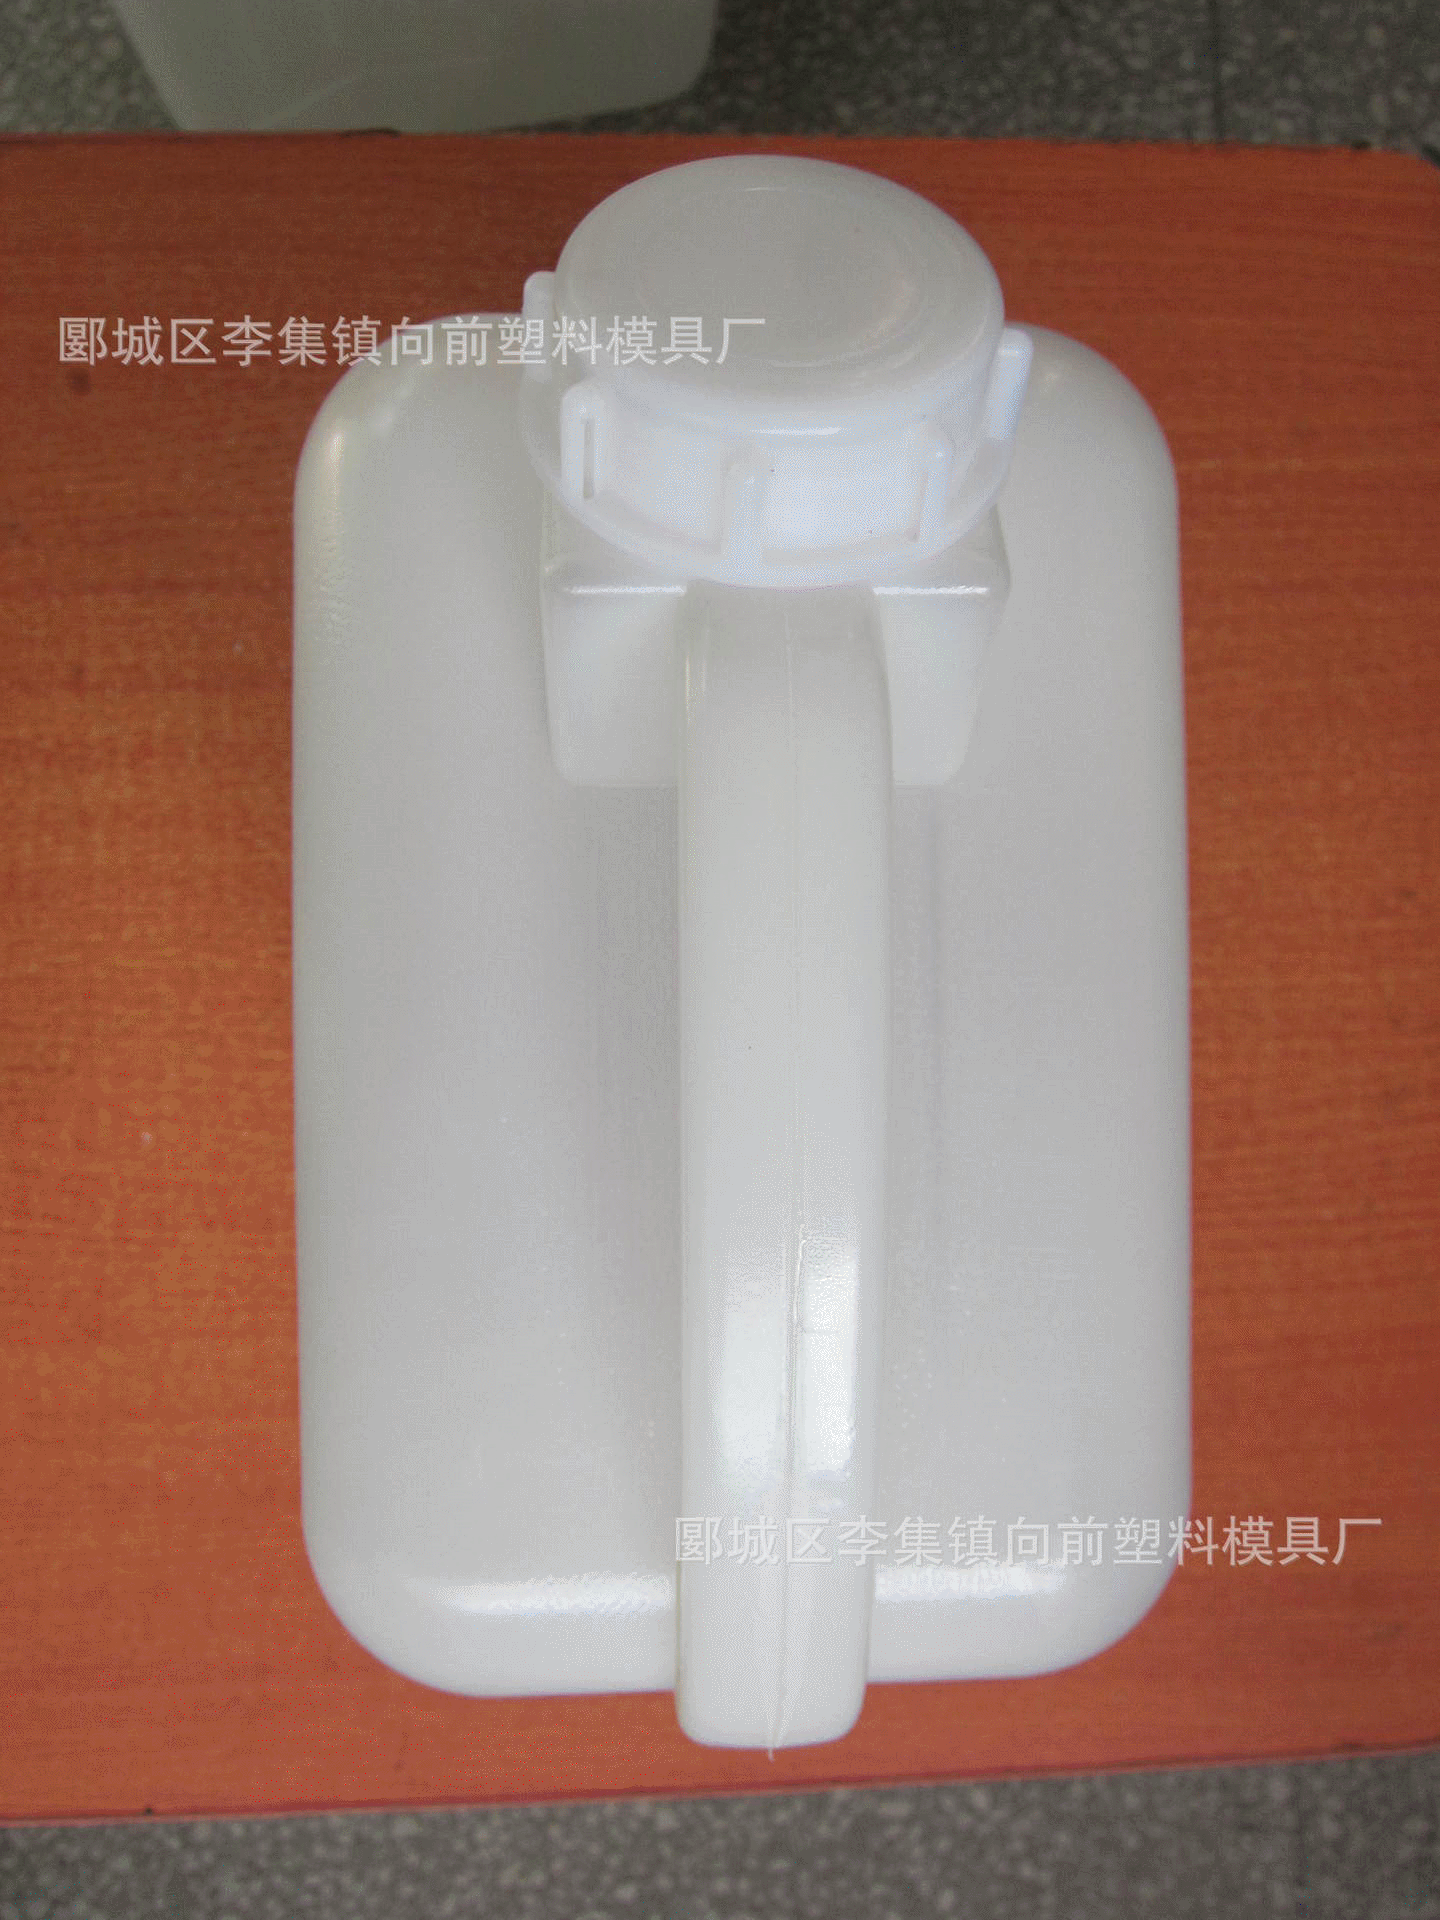 漯河生产塑料瓶厂家